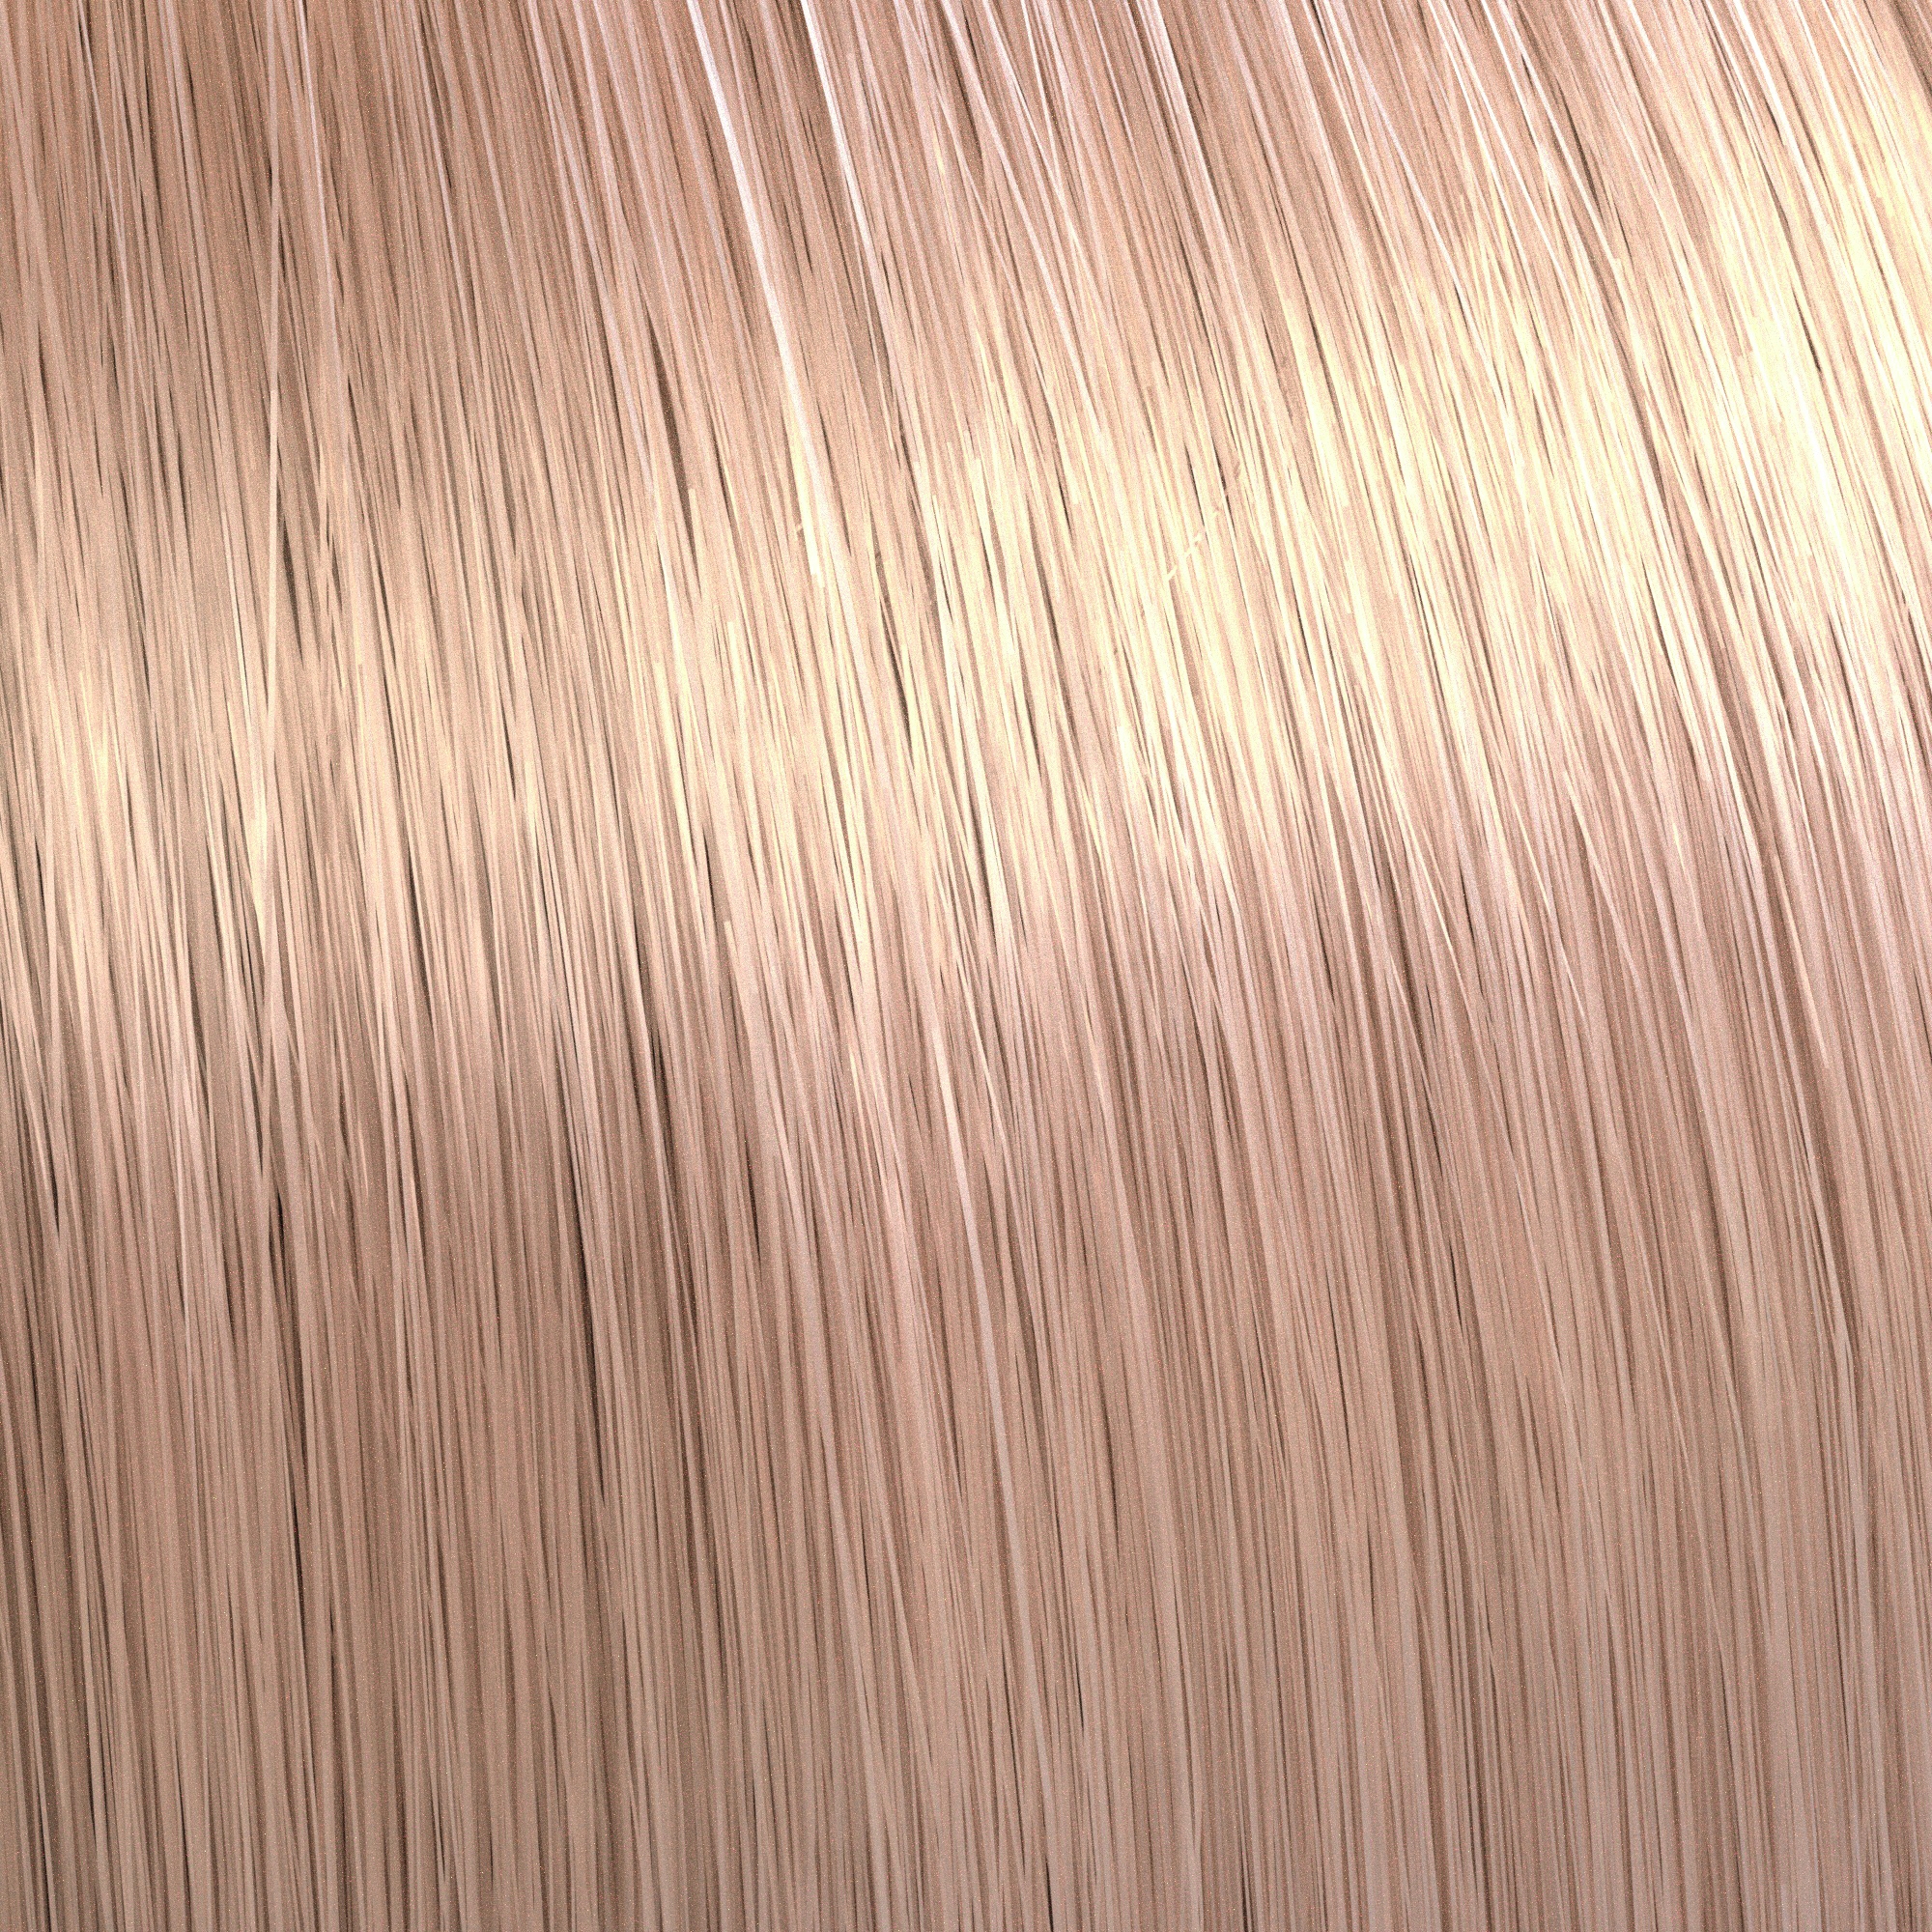 Wella Illumina: 9/59 Very Light Blonde/Mahogany Cendre